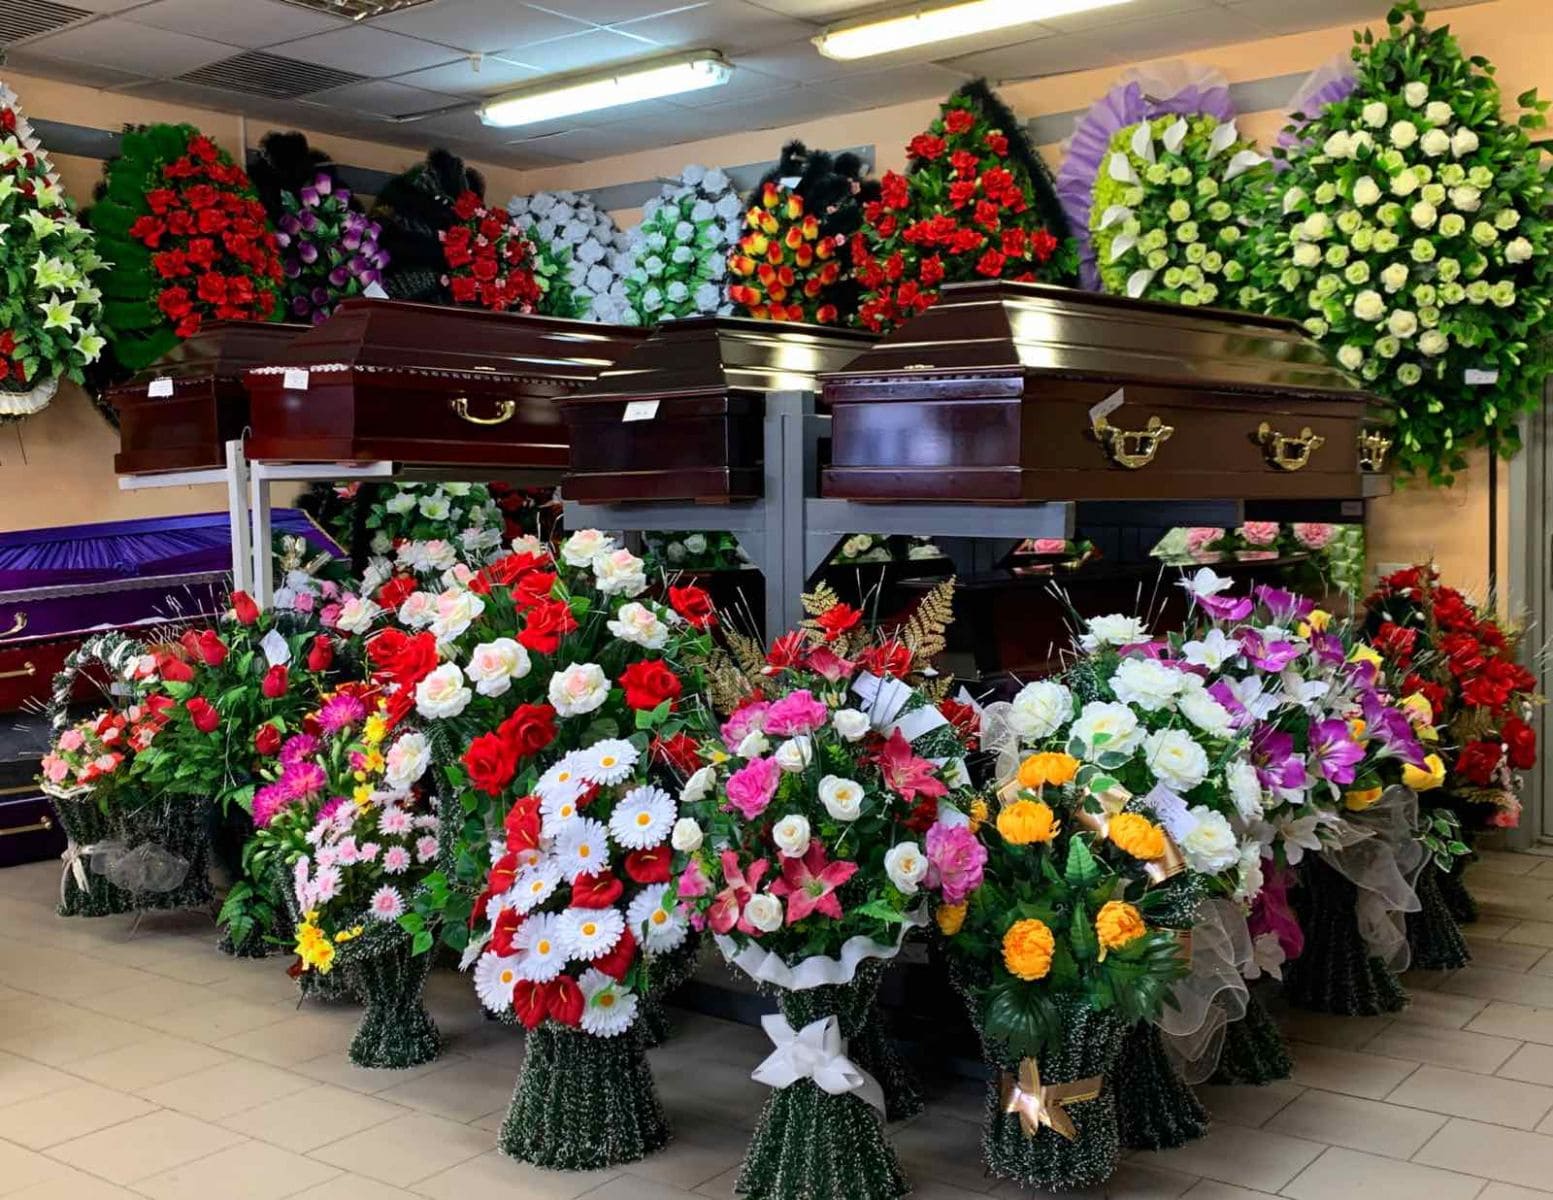 Магазин ритуальных услуг и товаров Минск недорого, гос цены